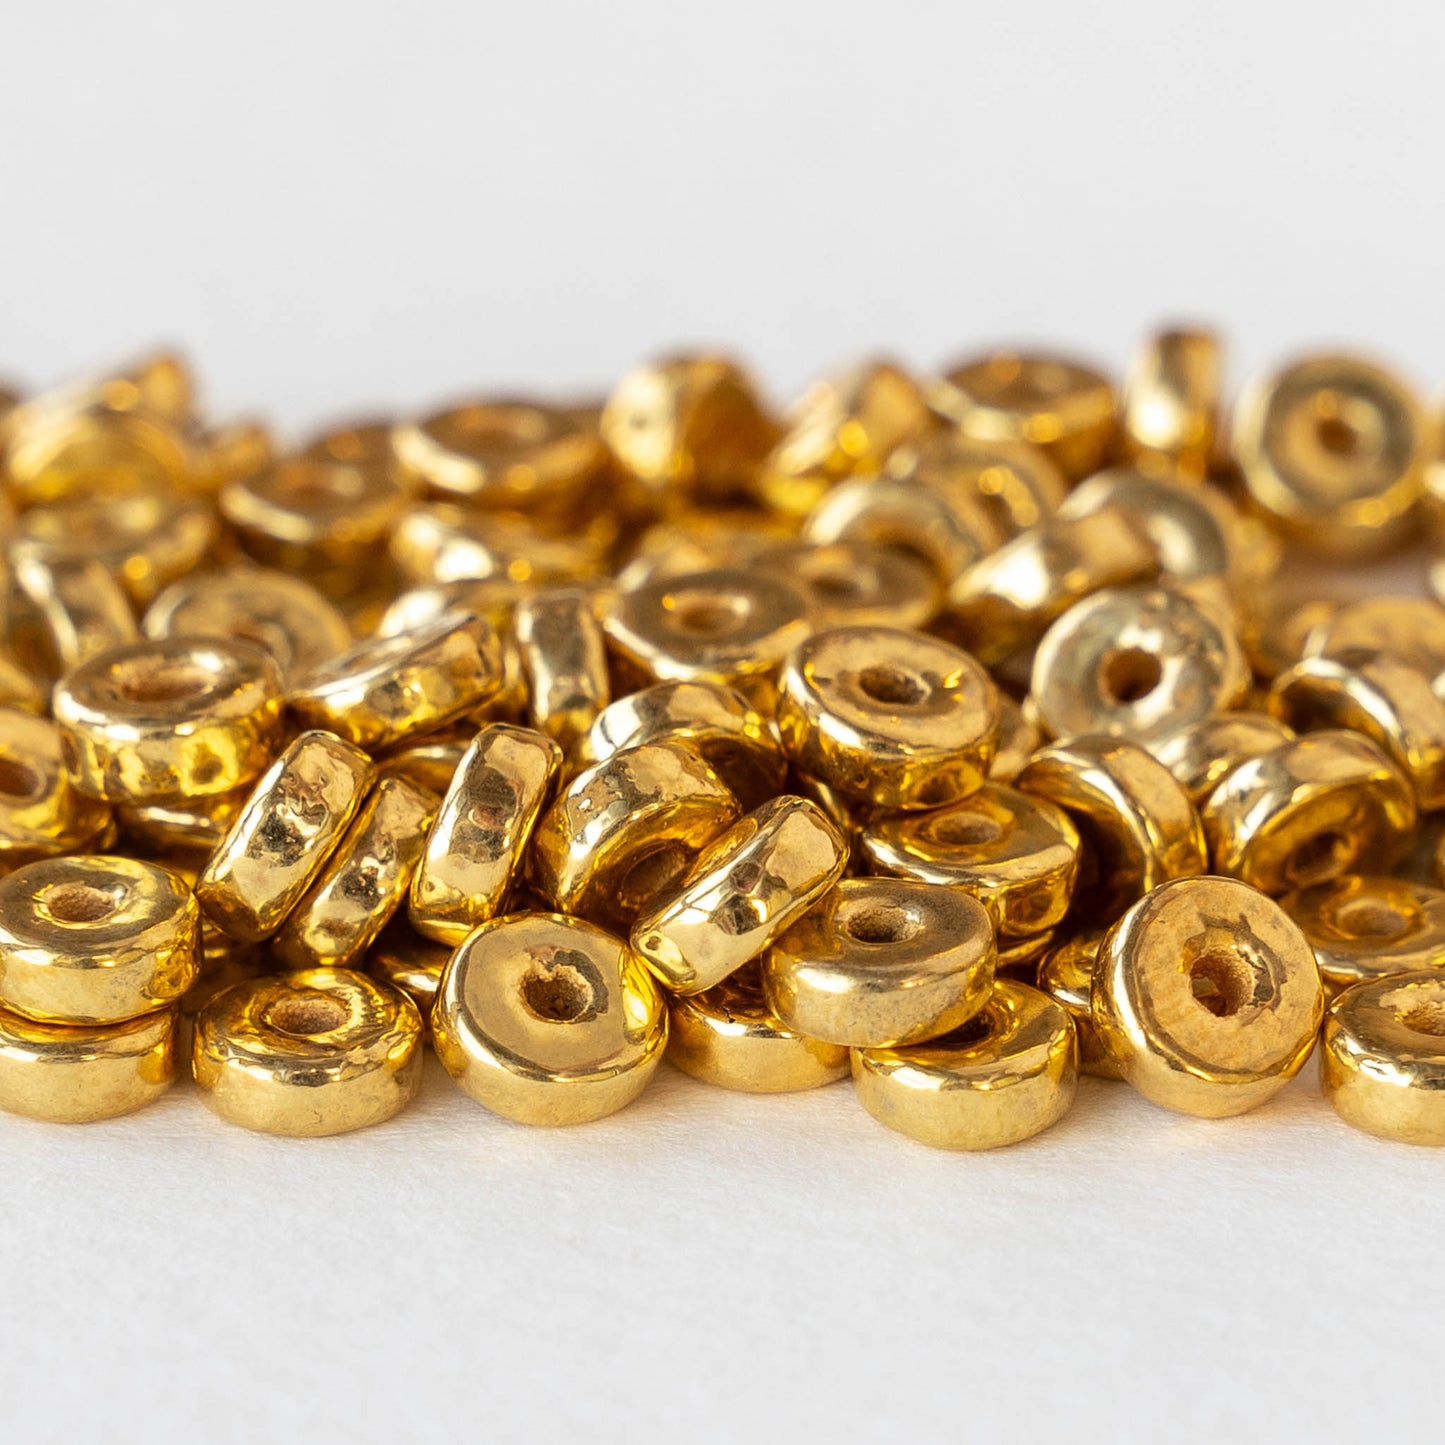 24K Gold Coated Ceramic Washer Beads - 6mm - Choose Amount